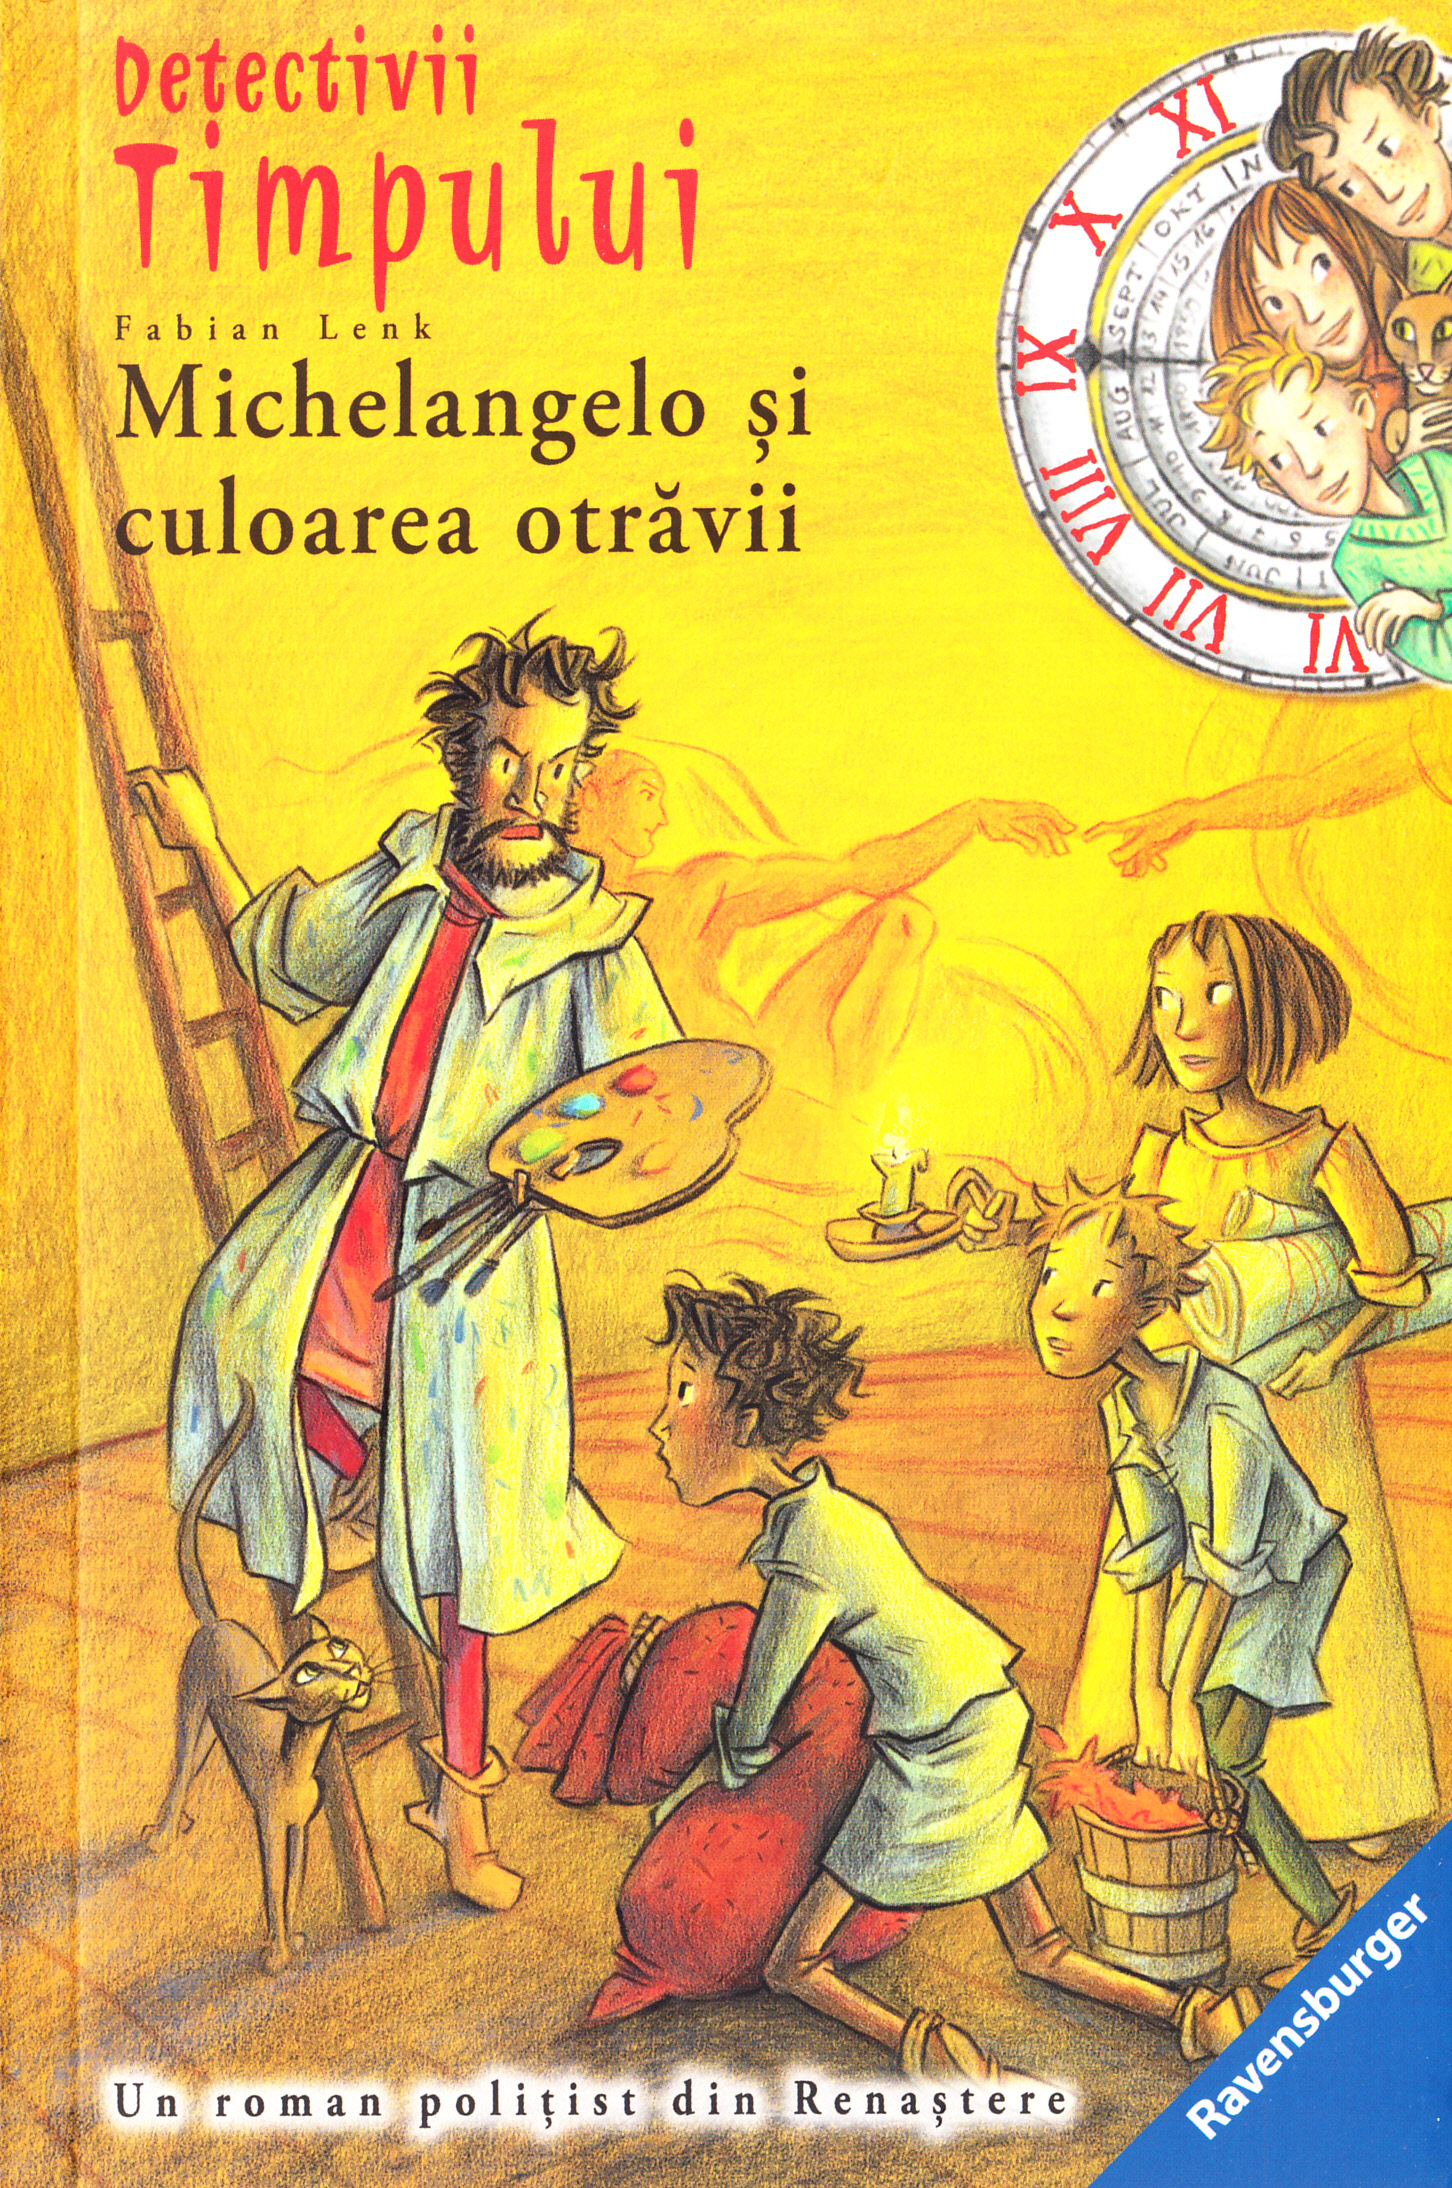 Detectivii timpului 10: Michelangelo si culoarea otravii - Fabian Lenk